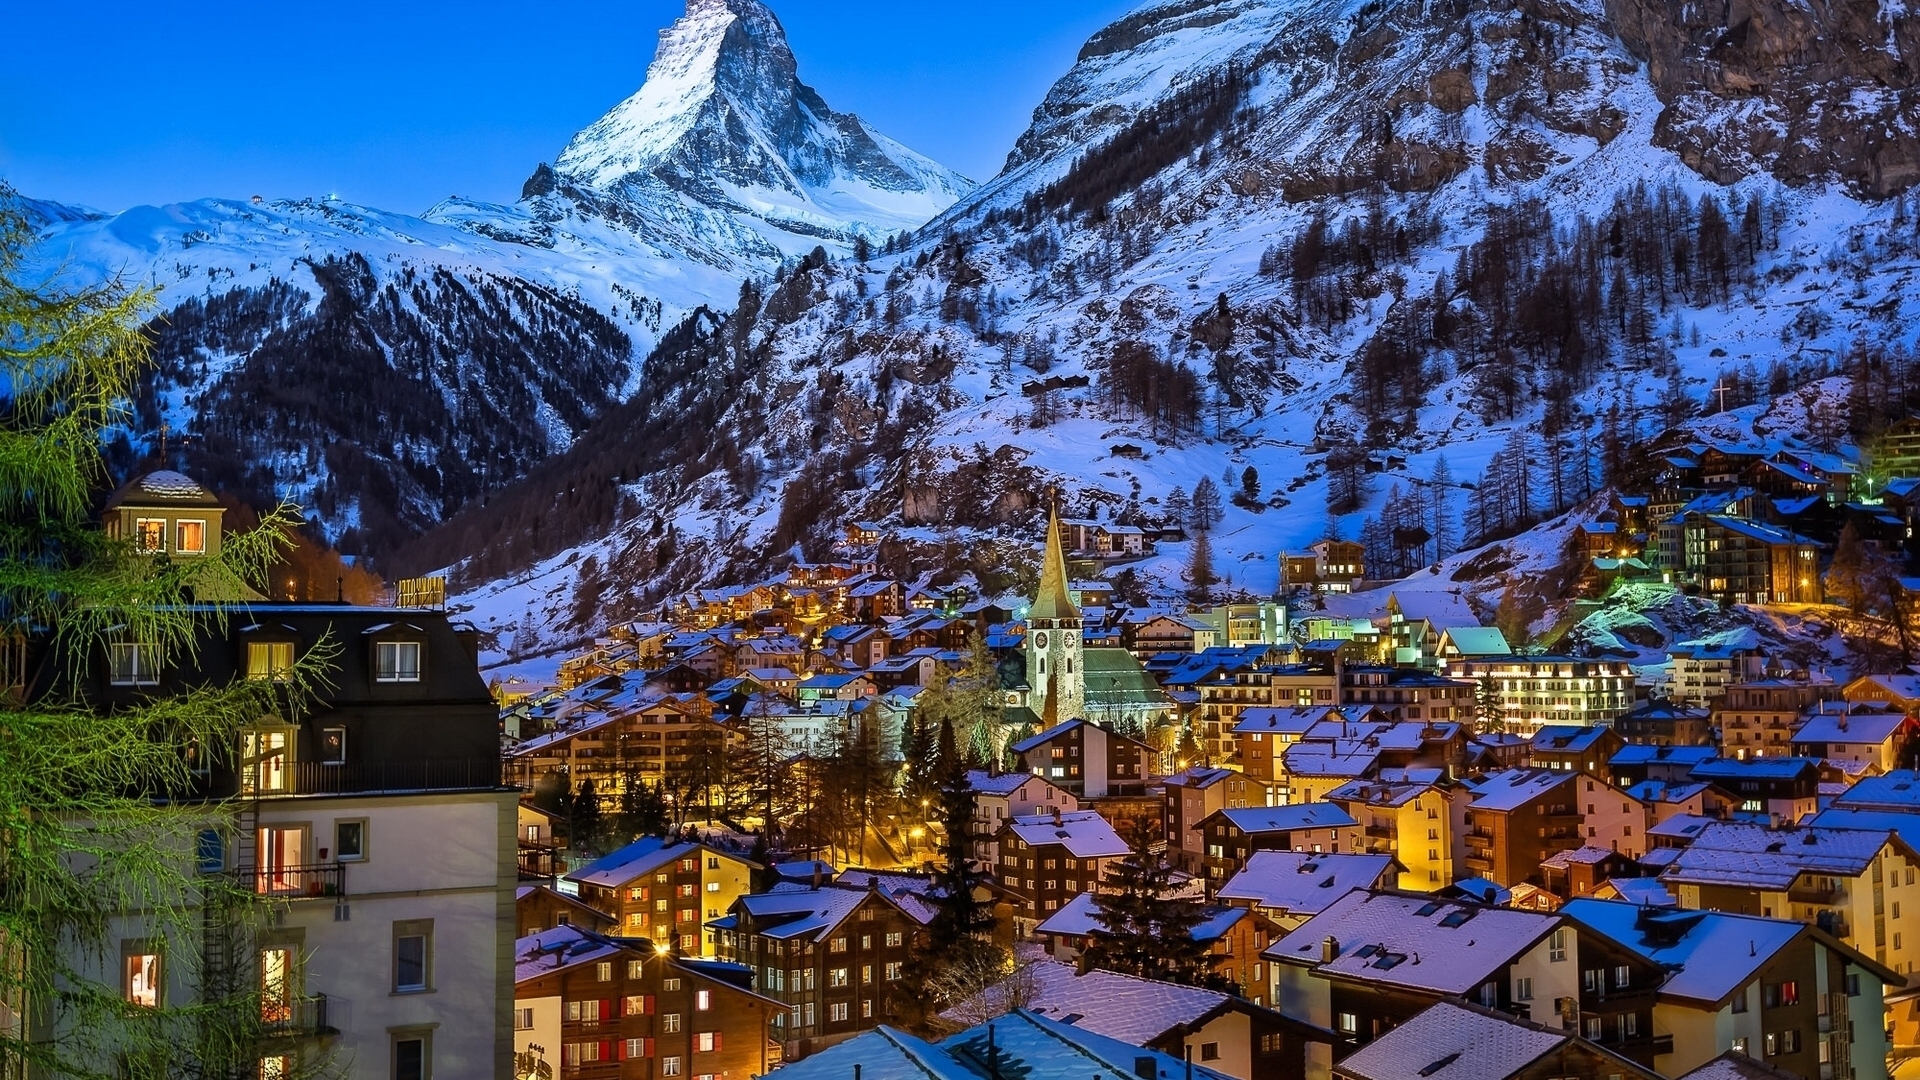 Zermatt Valley Switzerland for 1920 x 1080 HDTV 1080p resolution